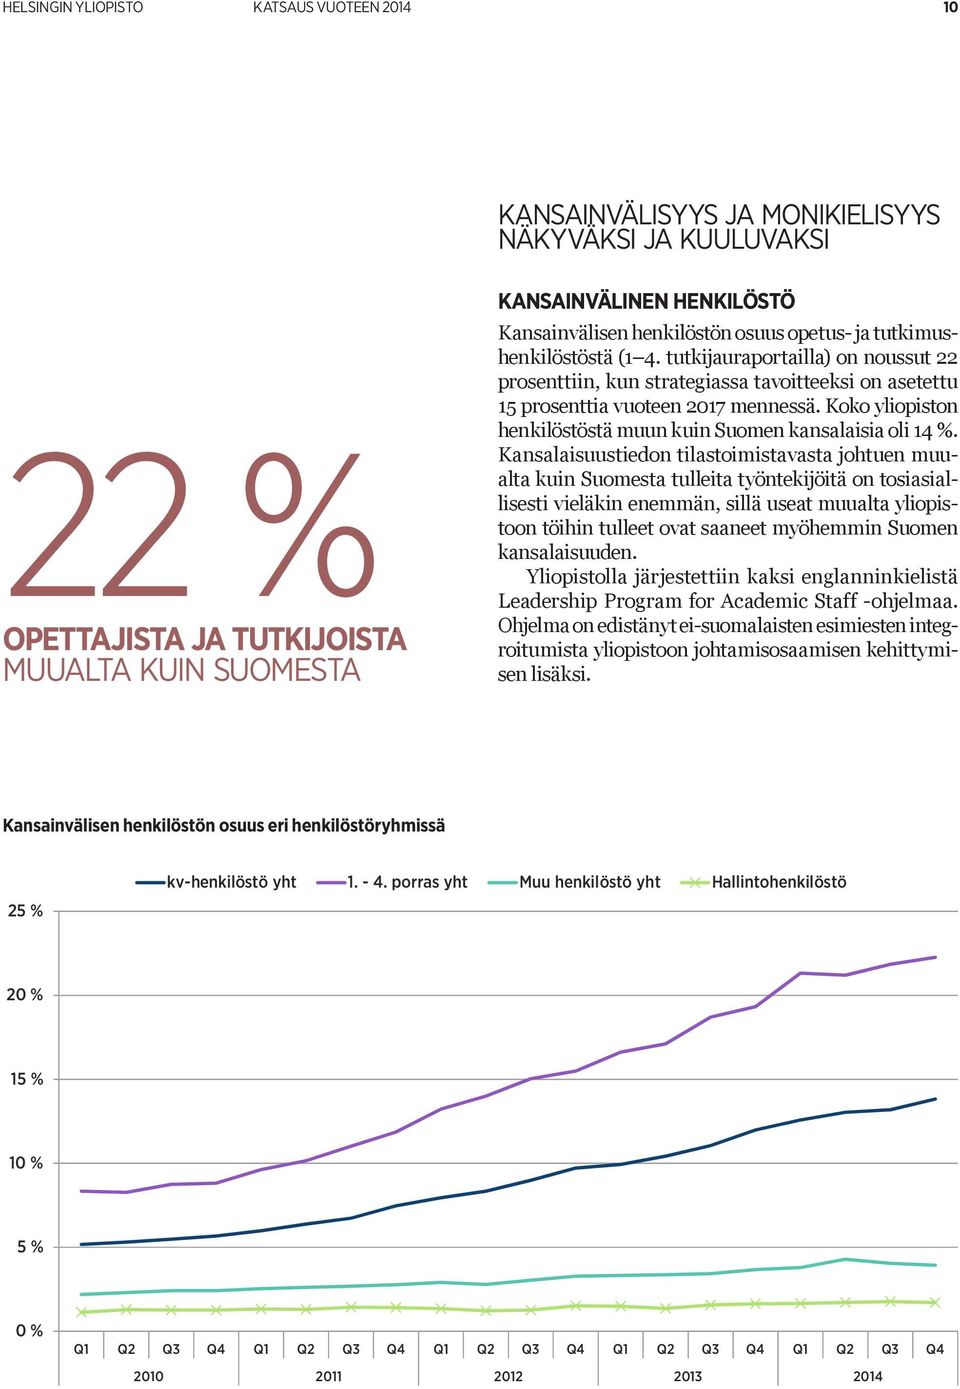 Koko yliopiston henkilöstöstä muun kuin Suomen kansalaisia oli 14 %.